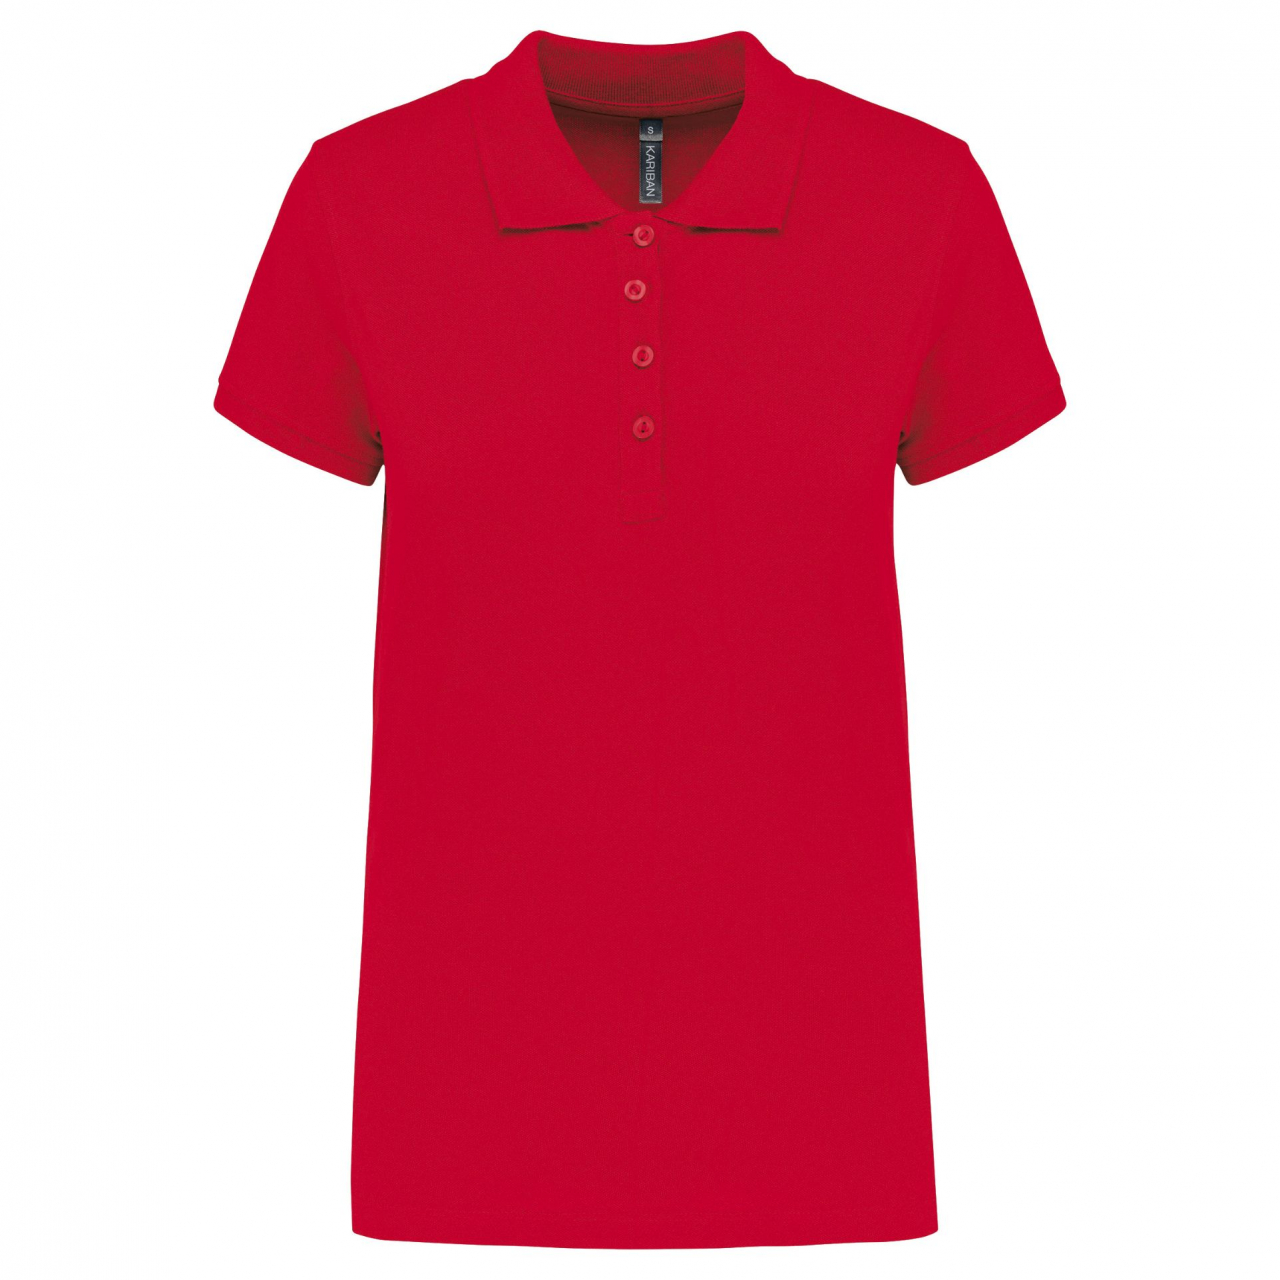 Polokošile dámská krátký rukáv Kariban - červená, XL